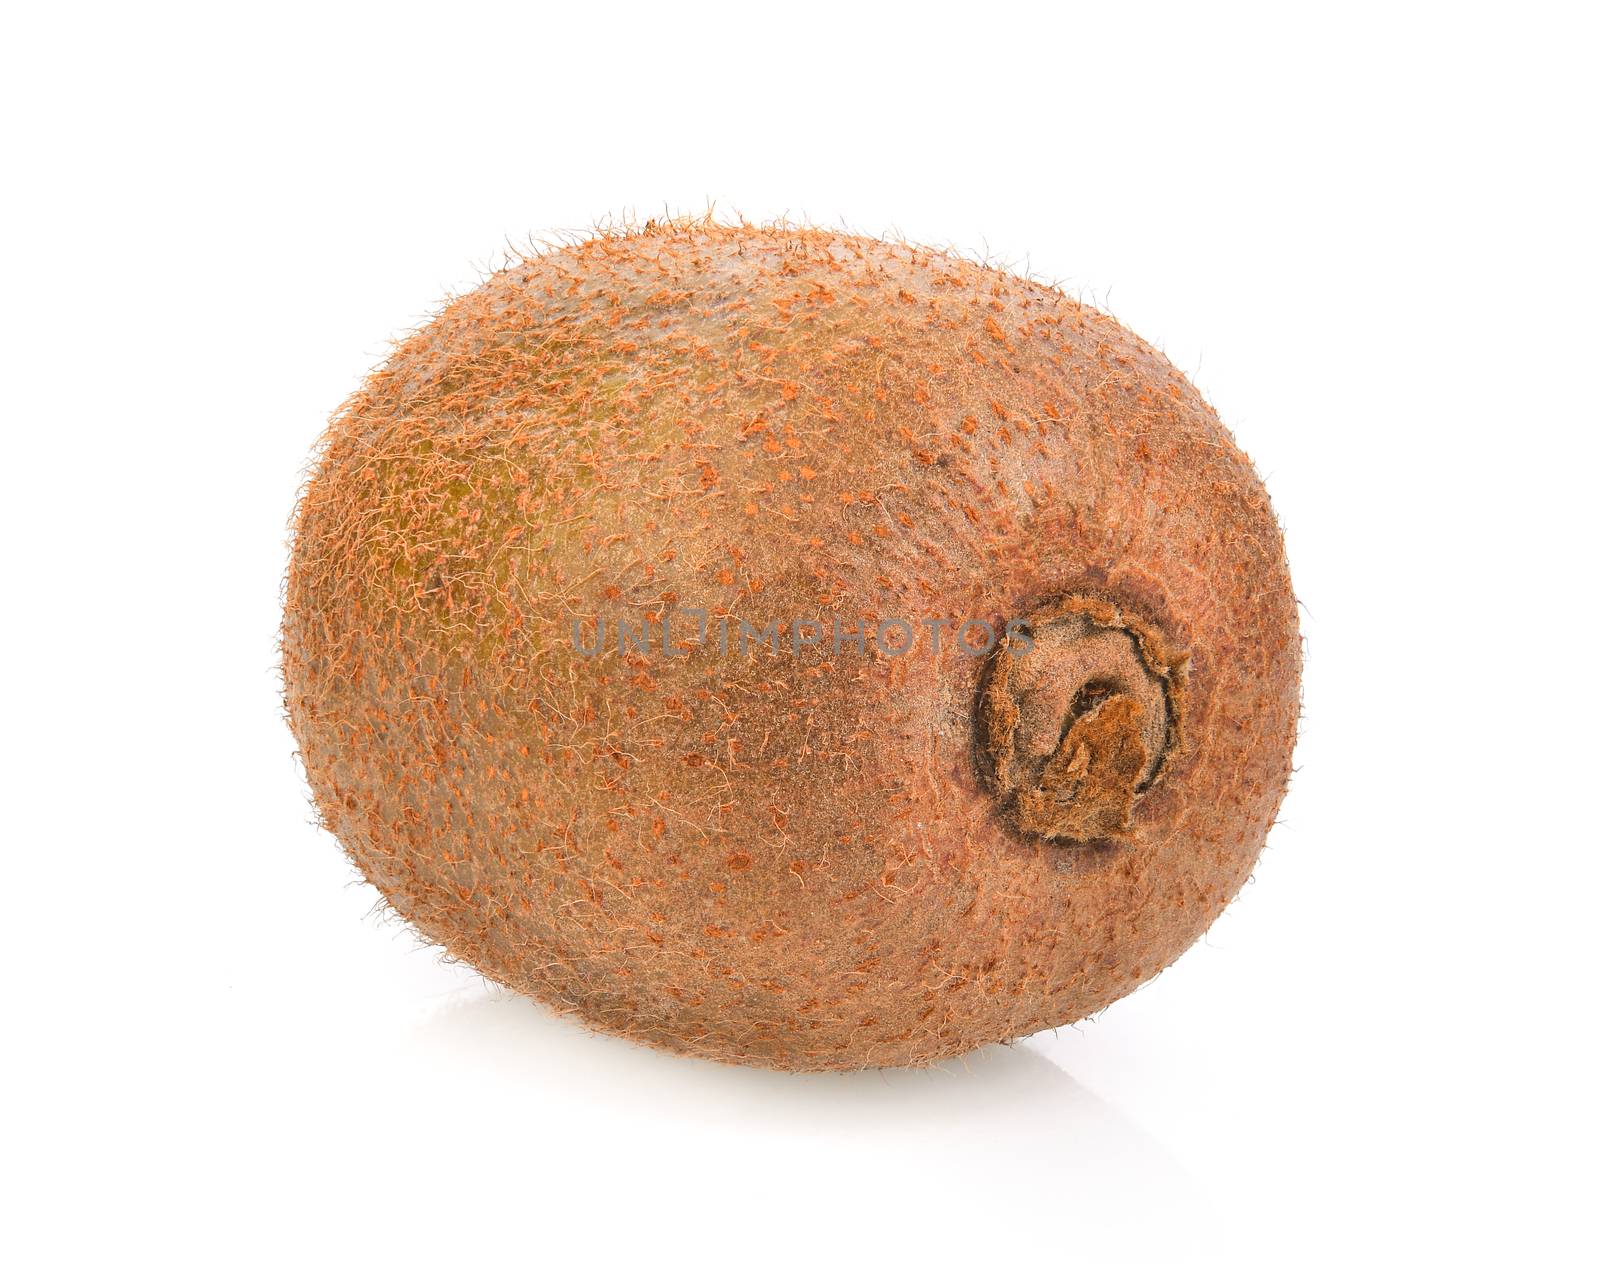 kiwi fruit on white background by sommai